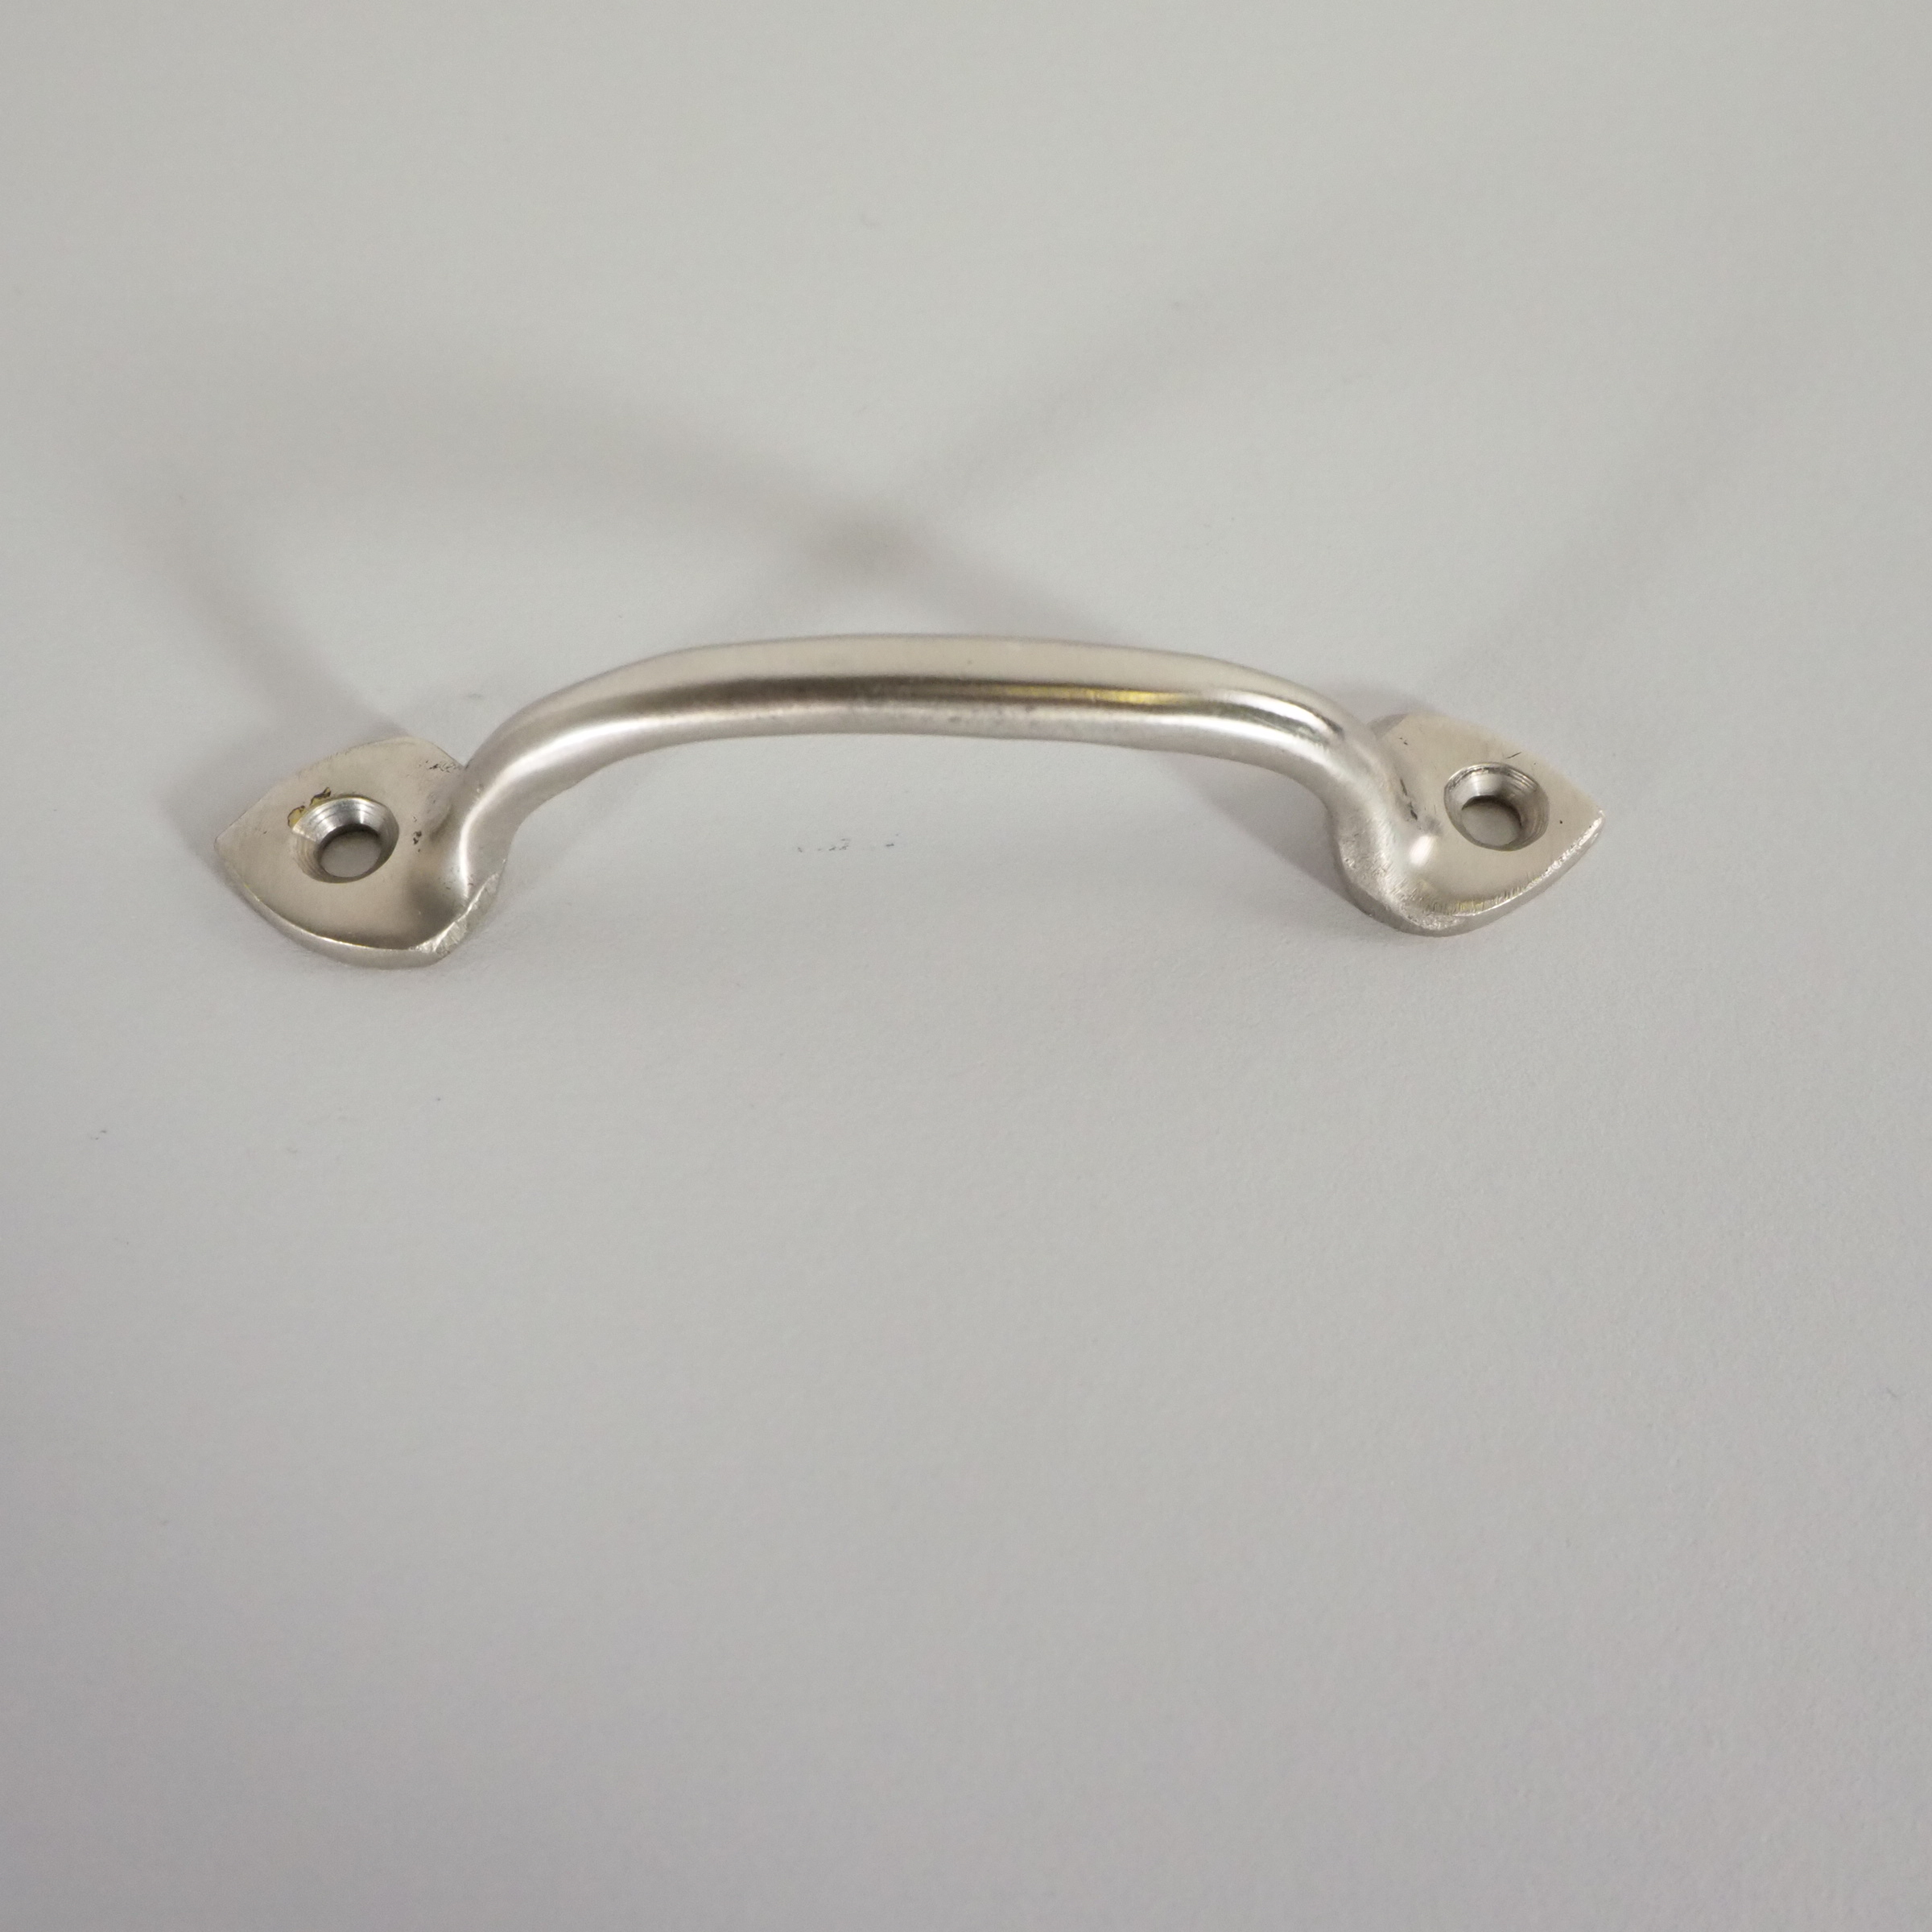 Cast aluminum cabinet handle (9 cm)